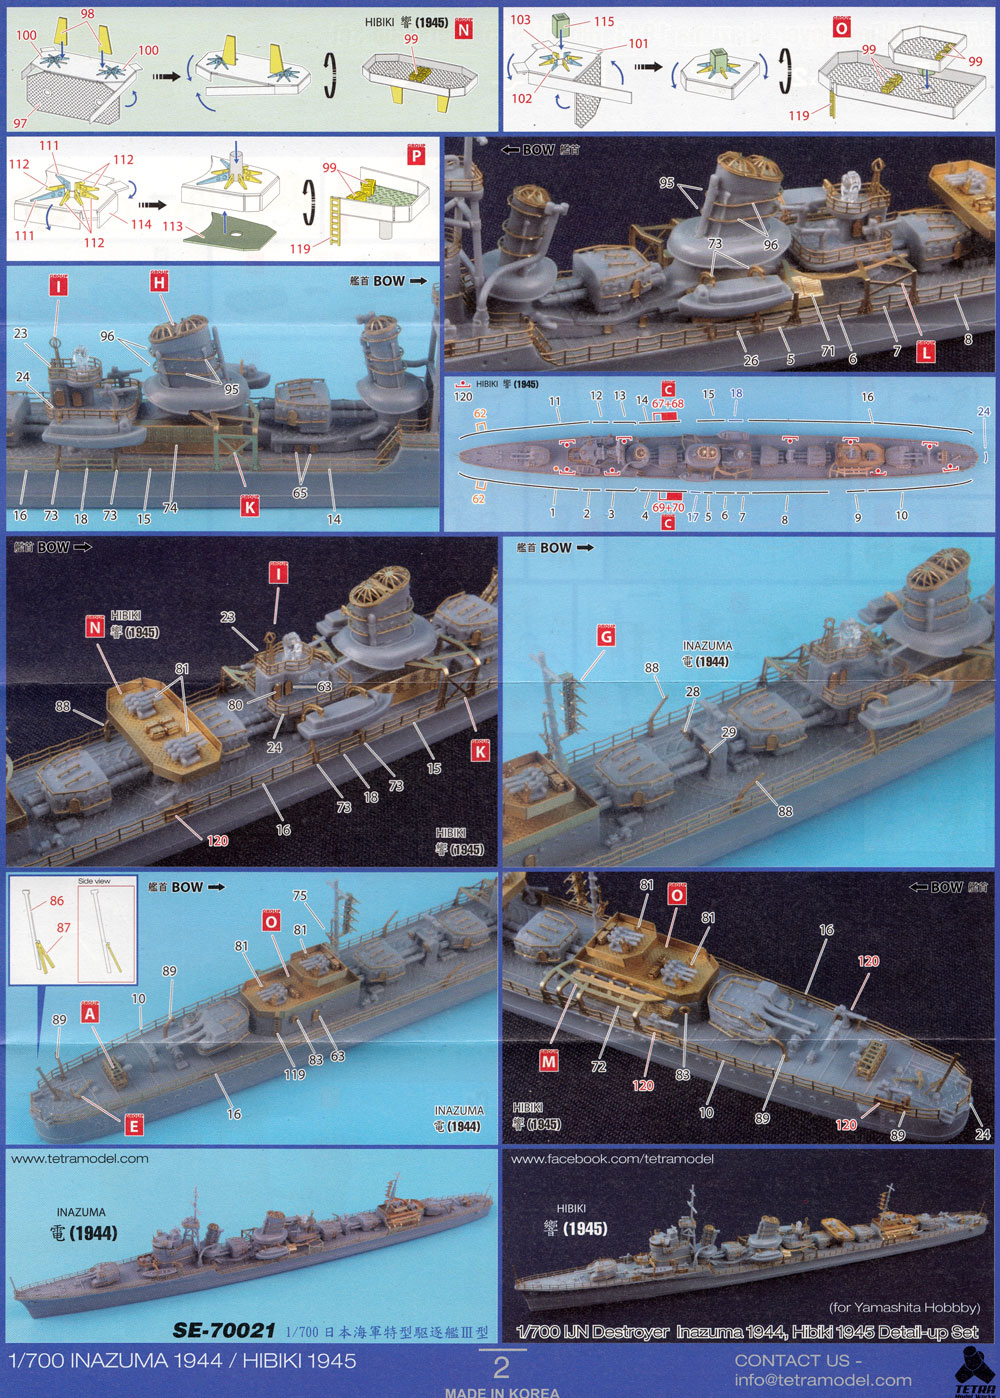 日本海軍 駆逐艦 電 1944 / 響 1945 ディテールアップセット (ヤマシタホビー用) エッチング (テトラモデルワークス 艦船 アクセサリーパーツ No.SE-70021) 商品画像_3